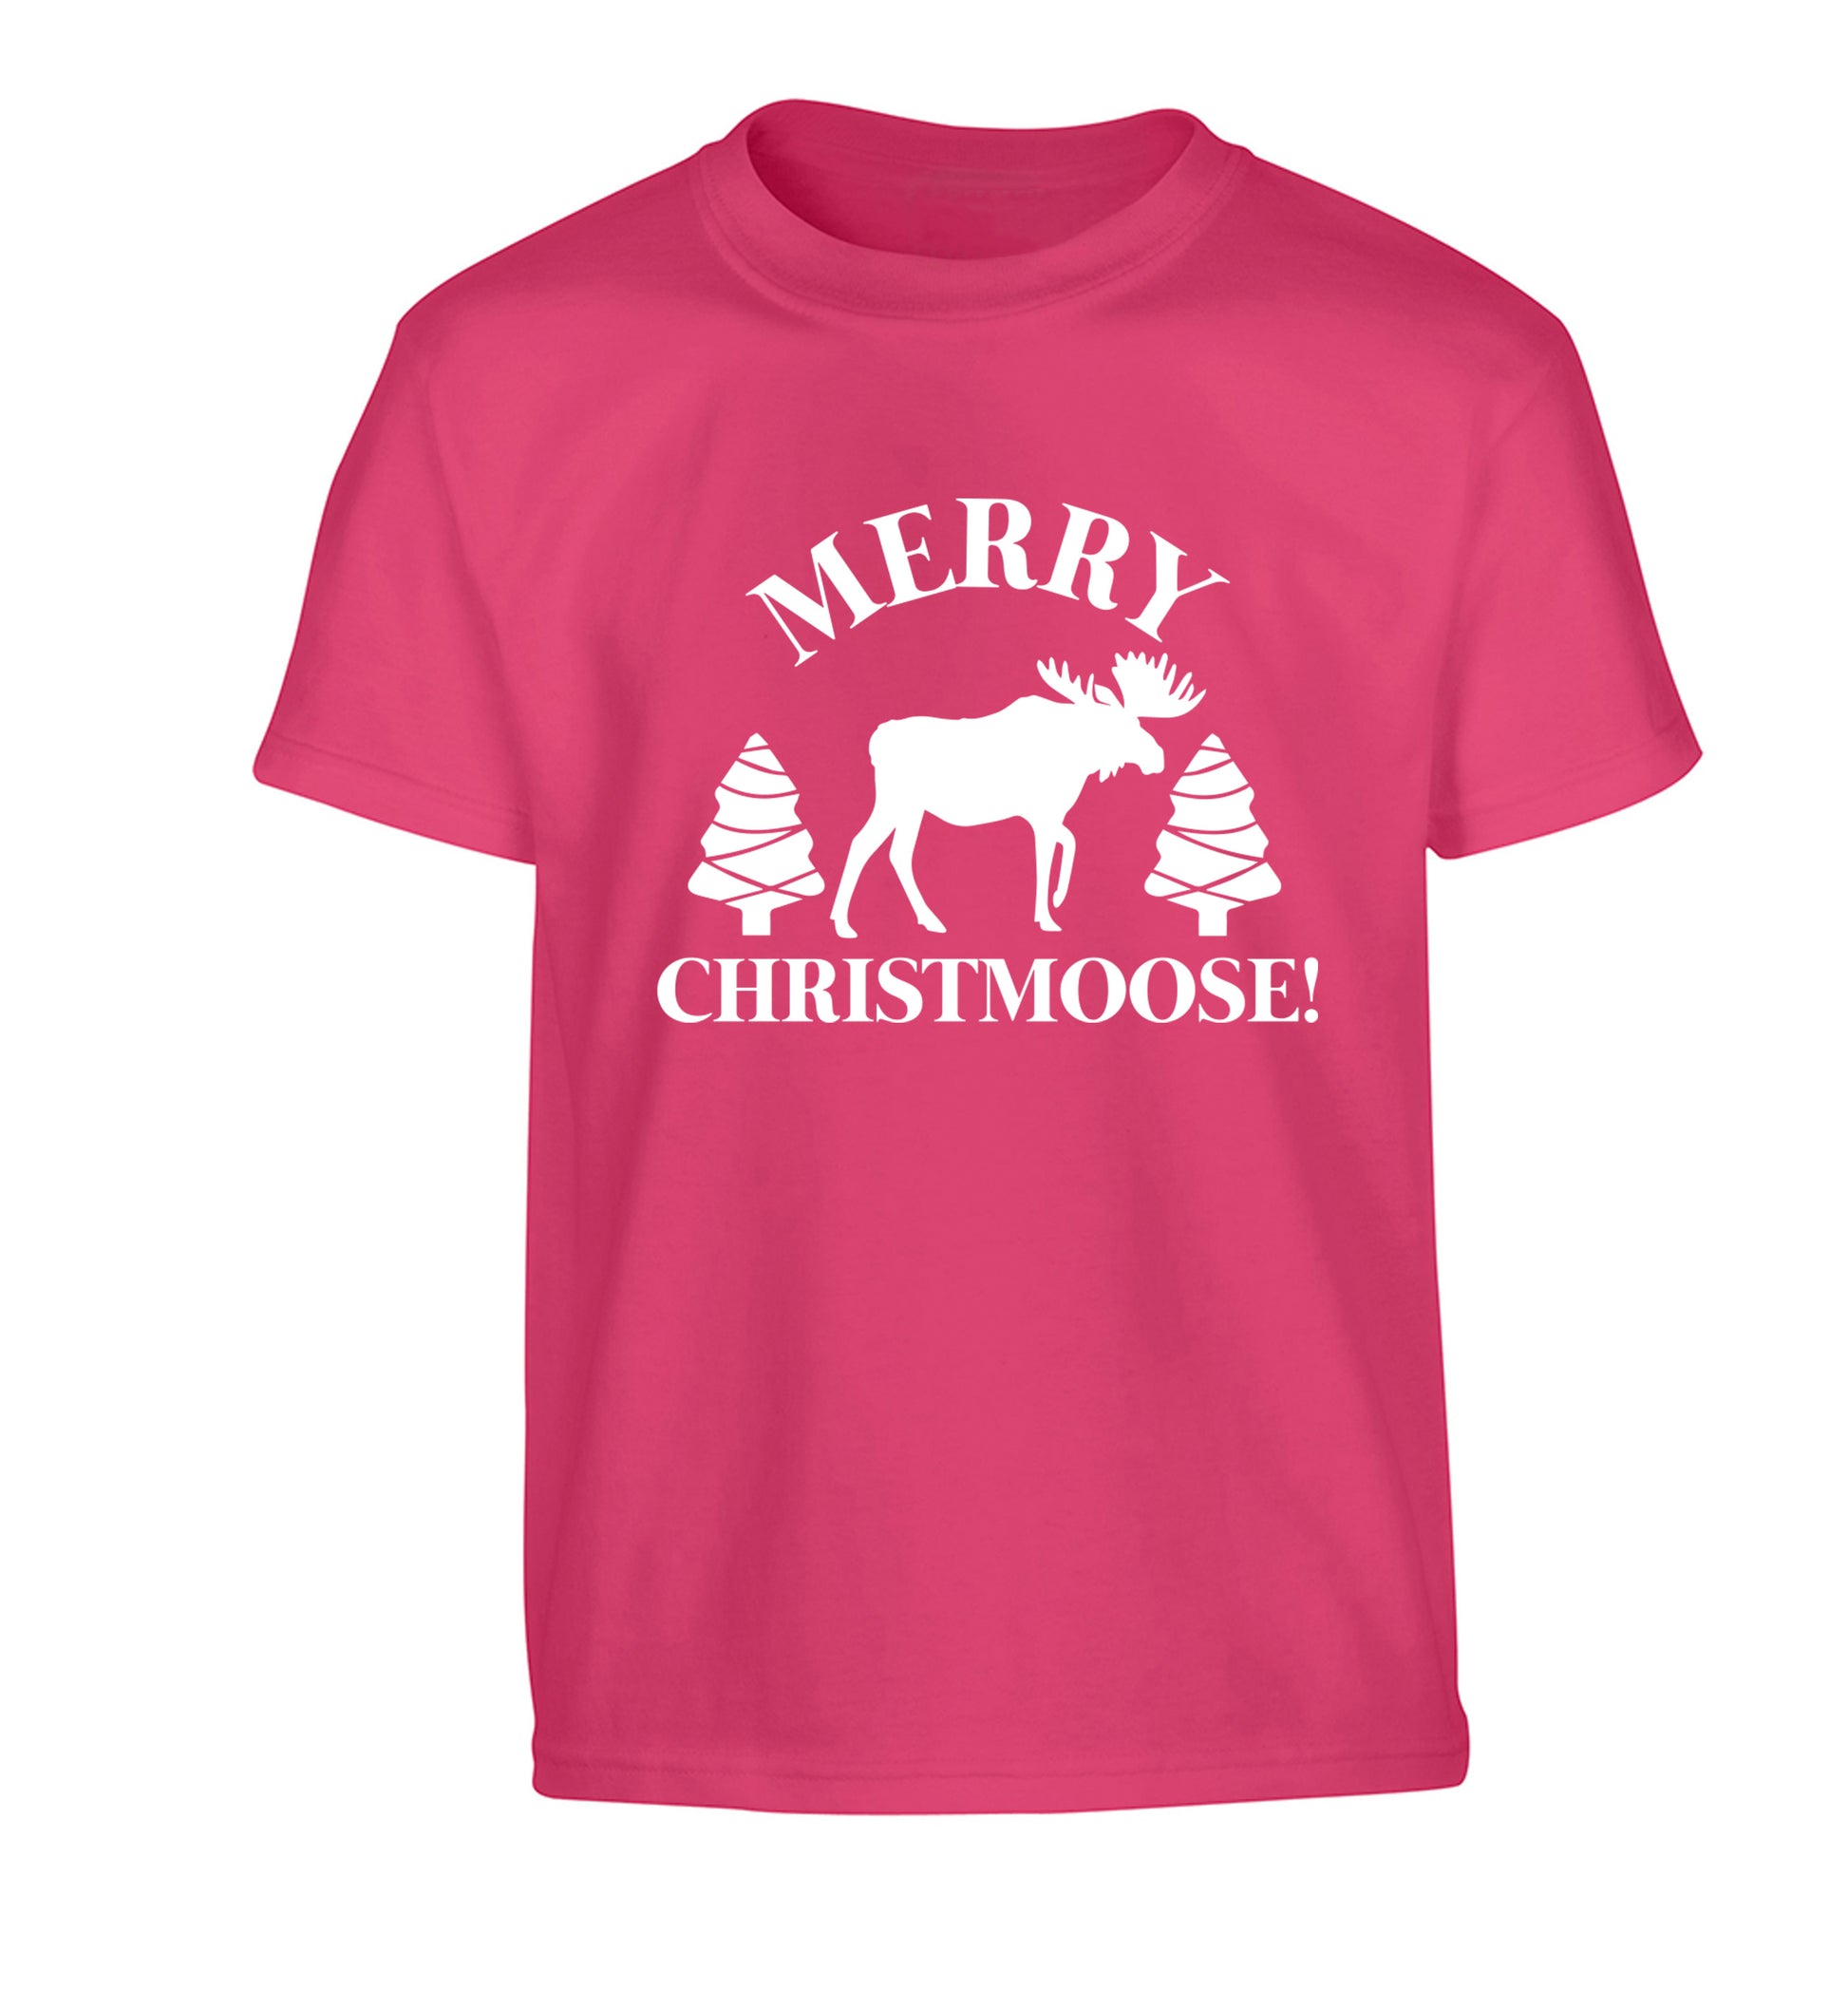 Merry Christmoose Children's pink Tshirt 12-14 Years